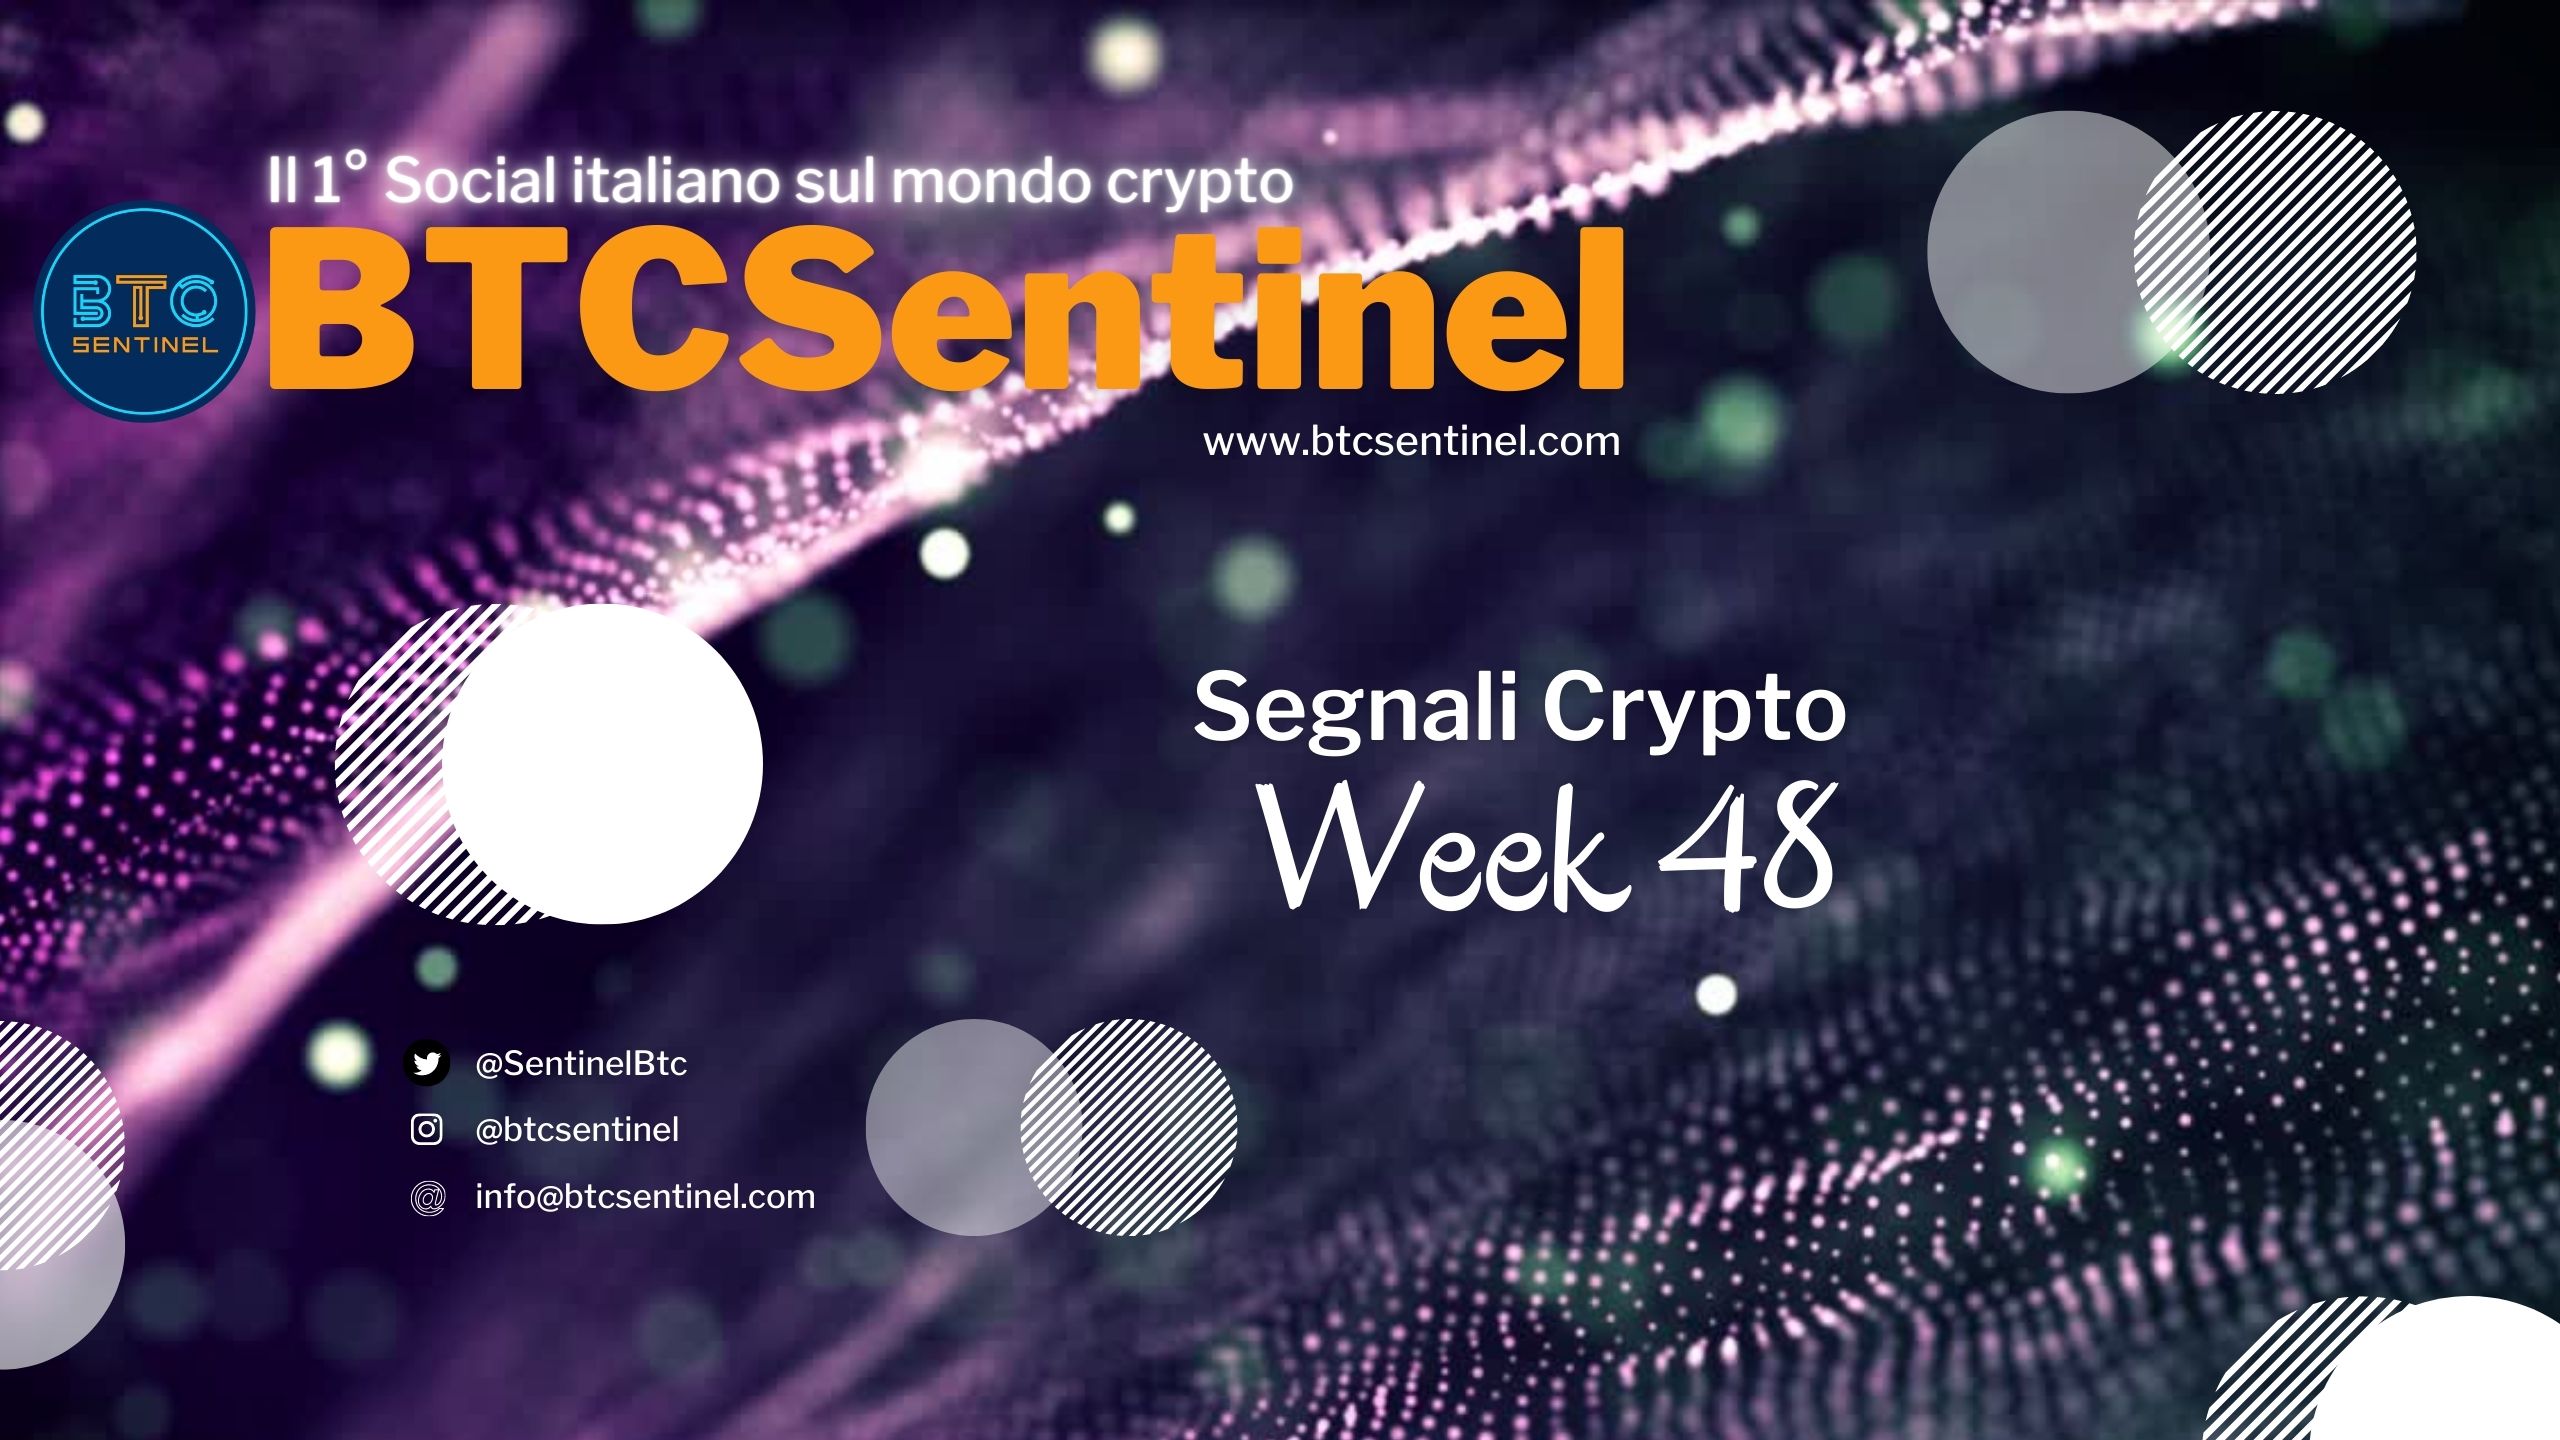 Segnali Crypto: Week 48 - Segnali e notizie dal mondo delle criptovalute